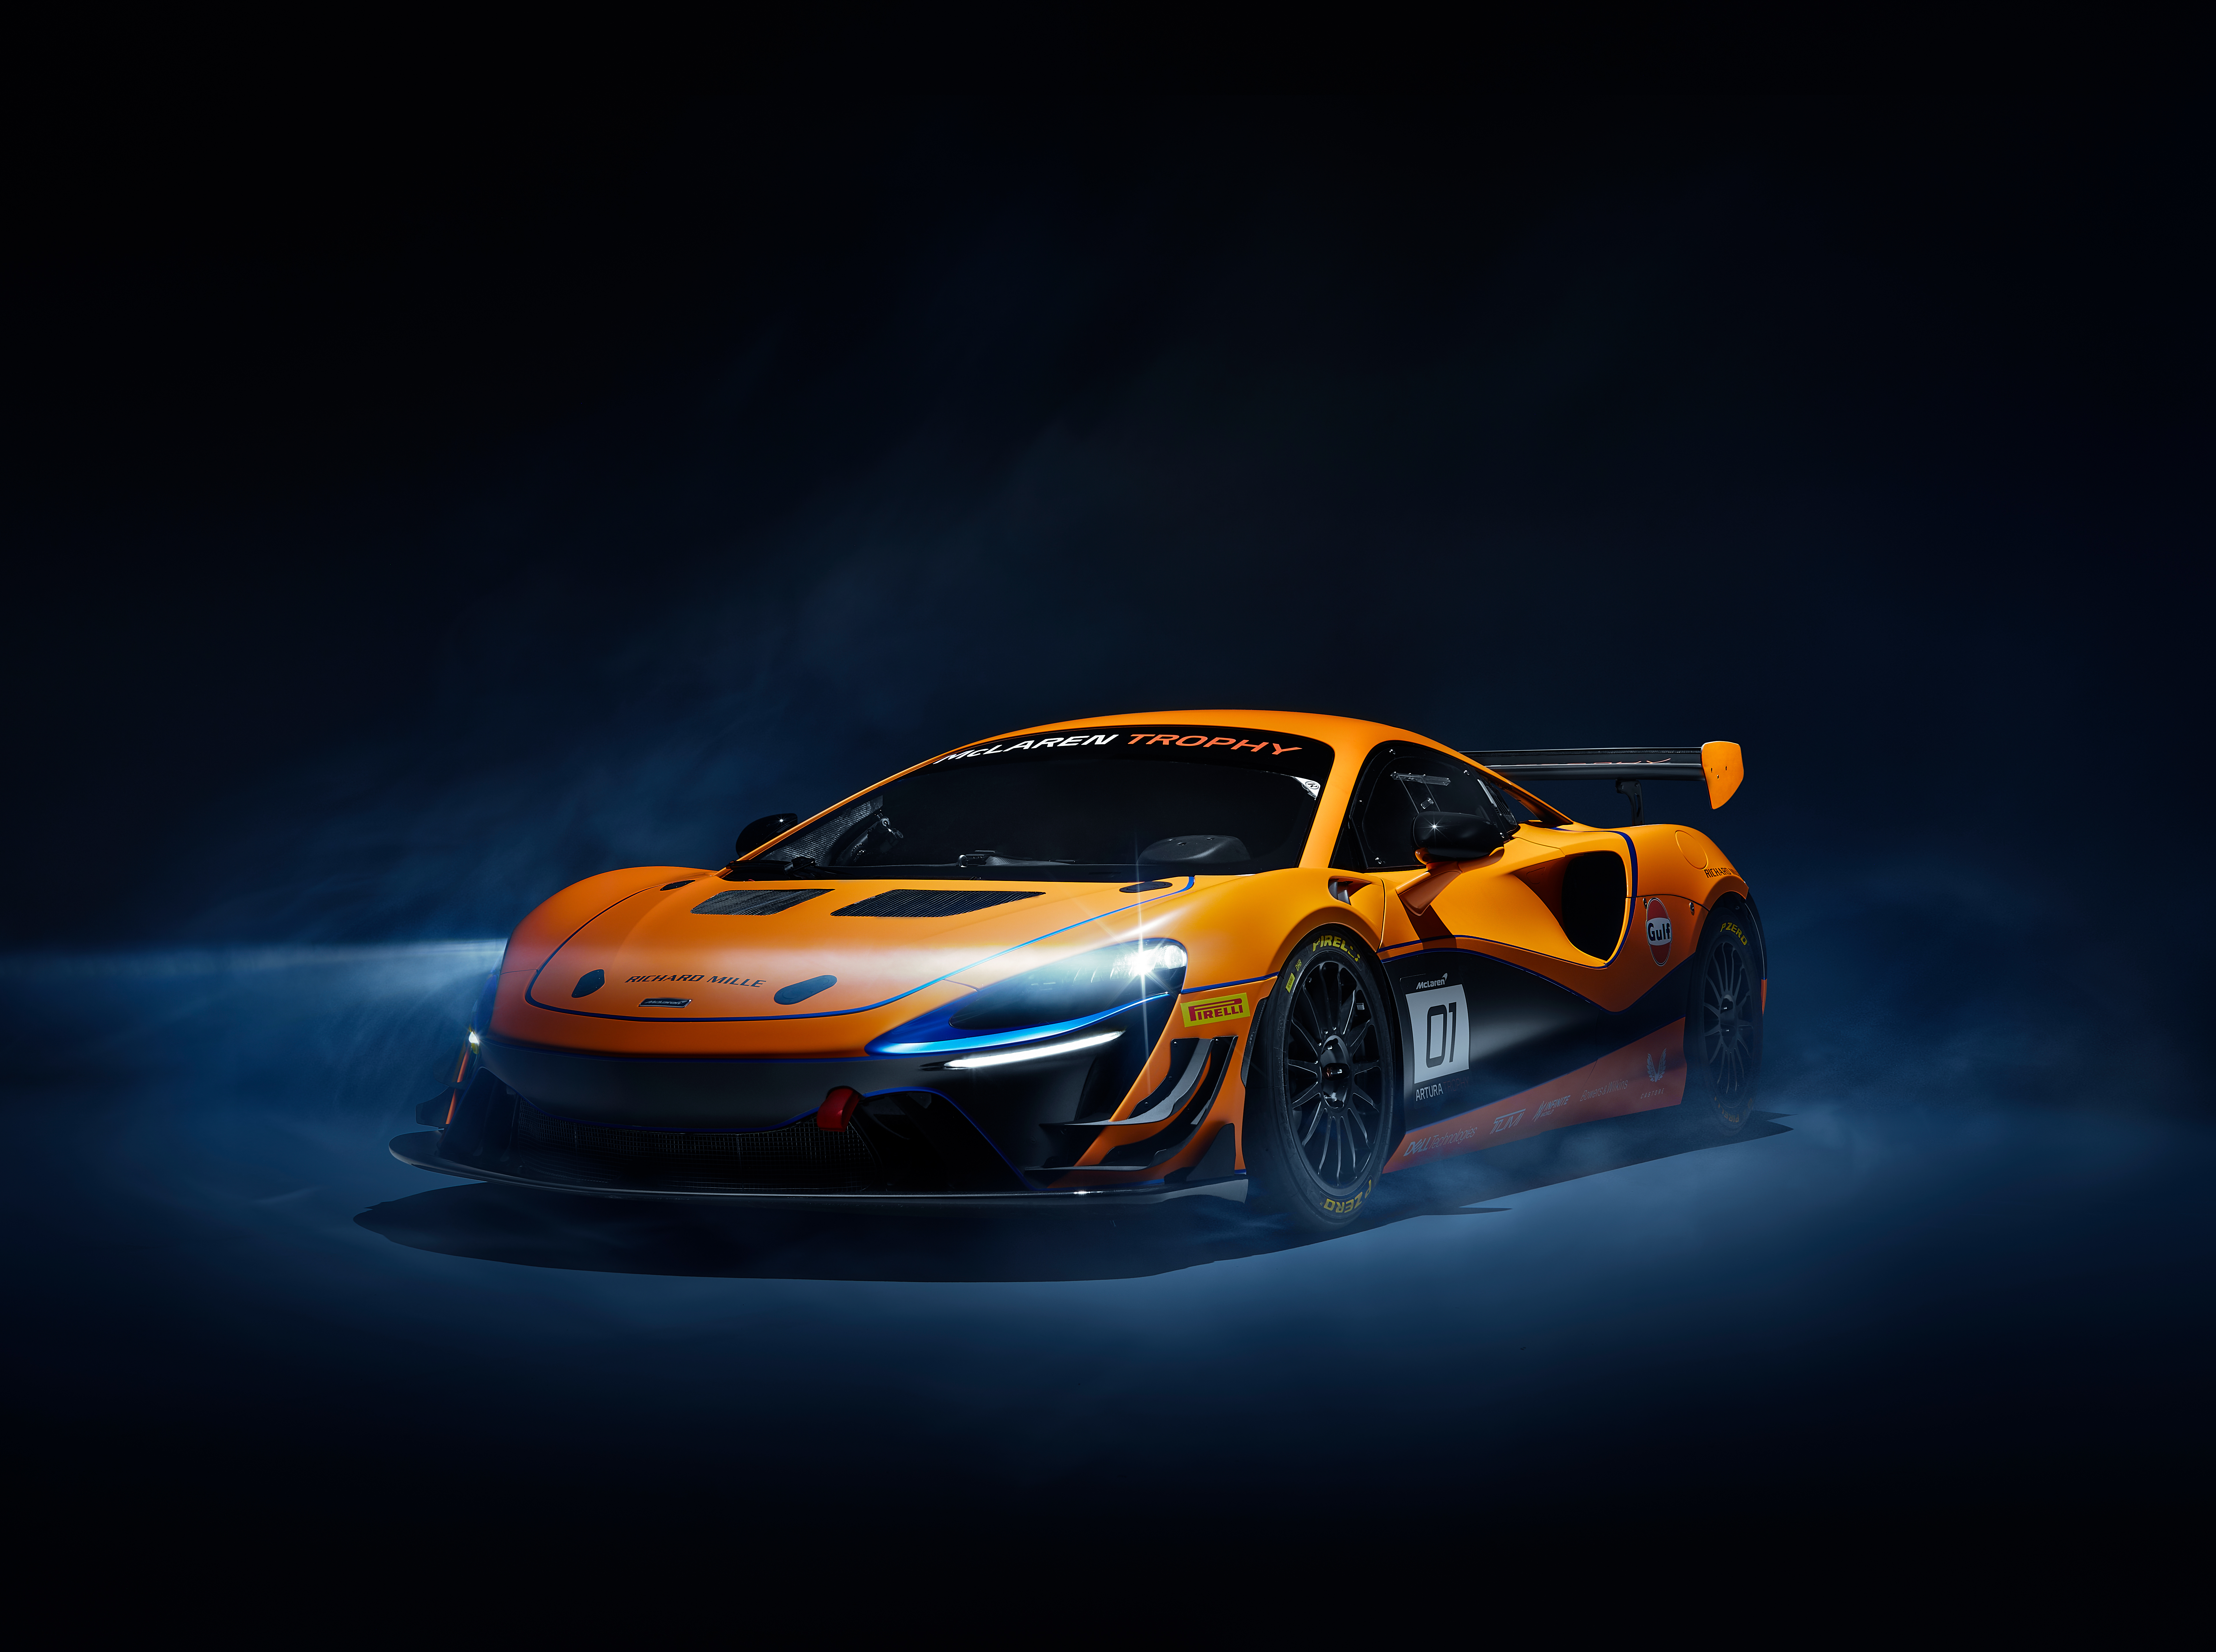 Hình nền siêu xe McLaren Artura sẽ khiến bạn phát cuồng với tốc độ và đẳng cấp huyền thoại của thương hiệu xe hơi nổi tiếng này. Hình ảnh siêu xe được chụp từ các góc độ ấn tượng, giúp bạn cảm nhận được vẻ đẹp hoàn hảo của nó.